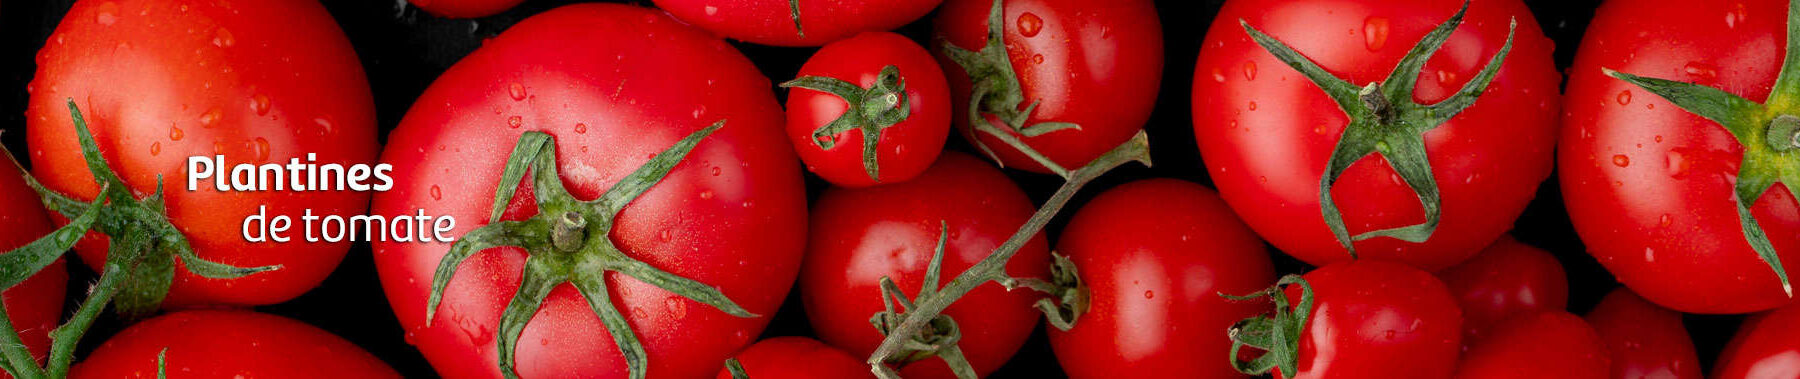 tomates-vivero-2